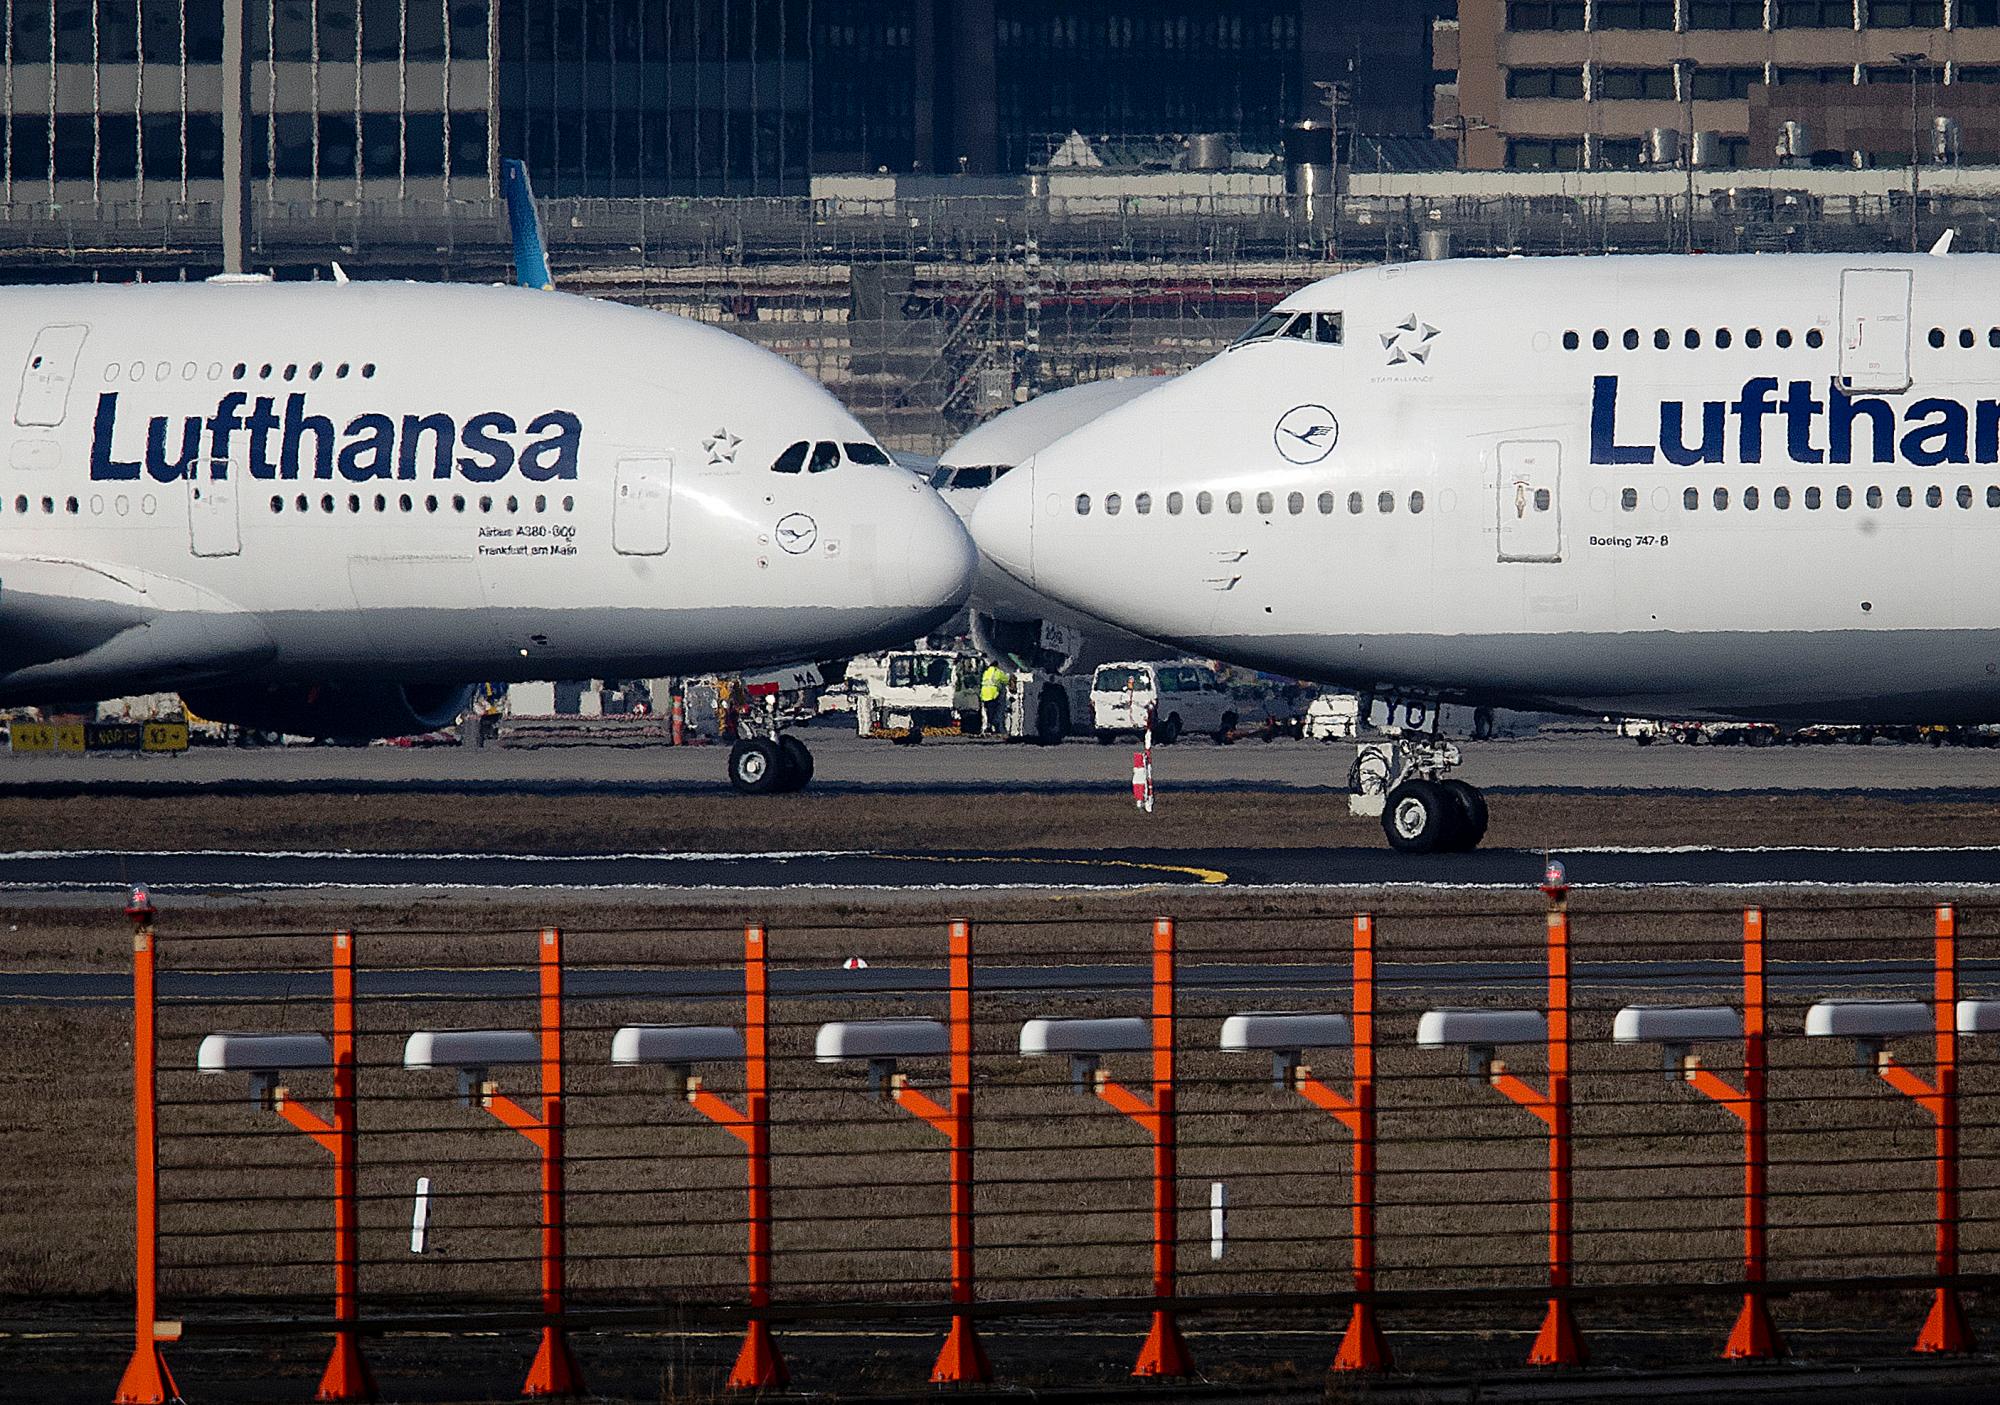 Un Airbus A380, a la izquierda, y un Boeing 747, ambos de la aerolínea Lufthansa se cruzan en el aeropuerto de Frankfurt, Alemania.